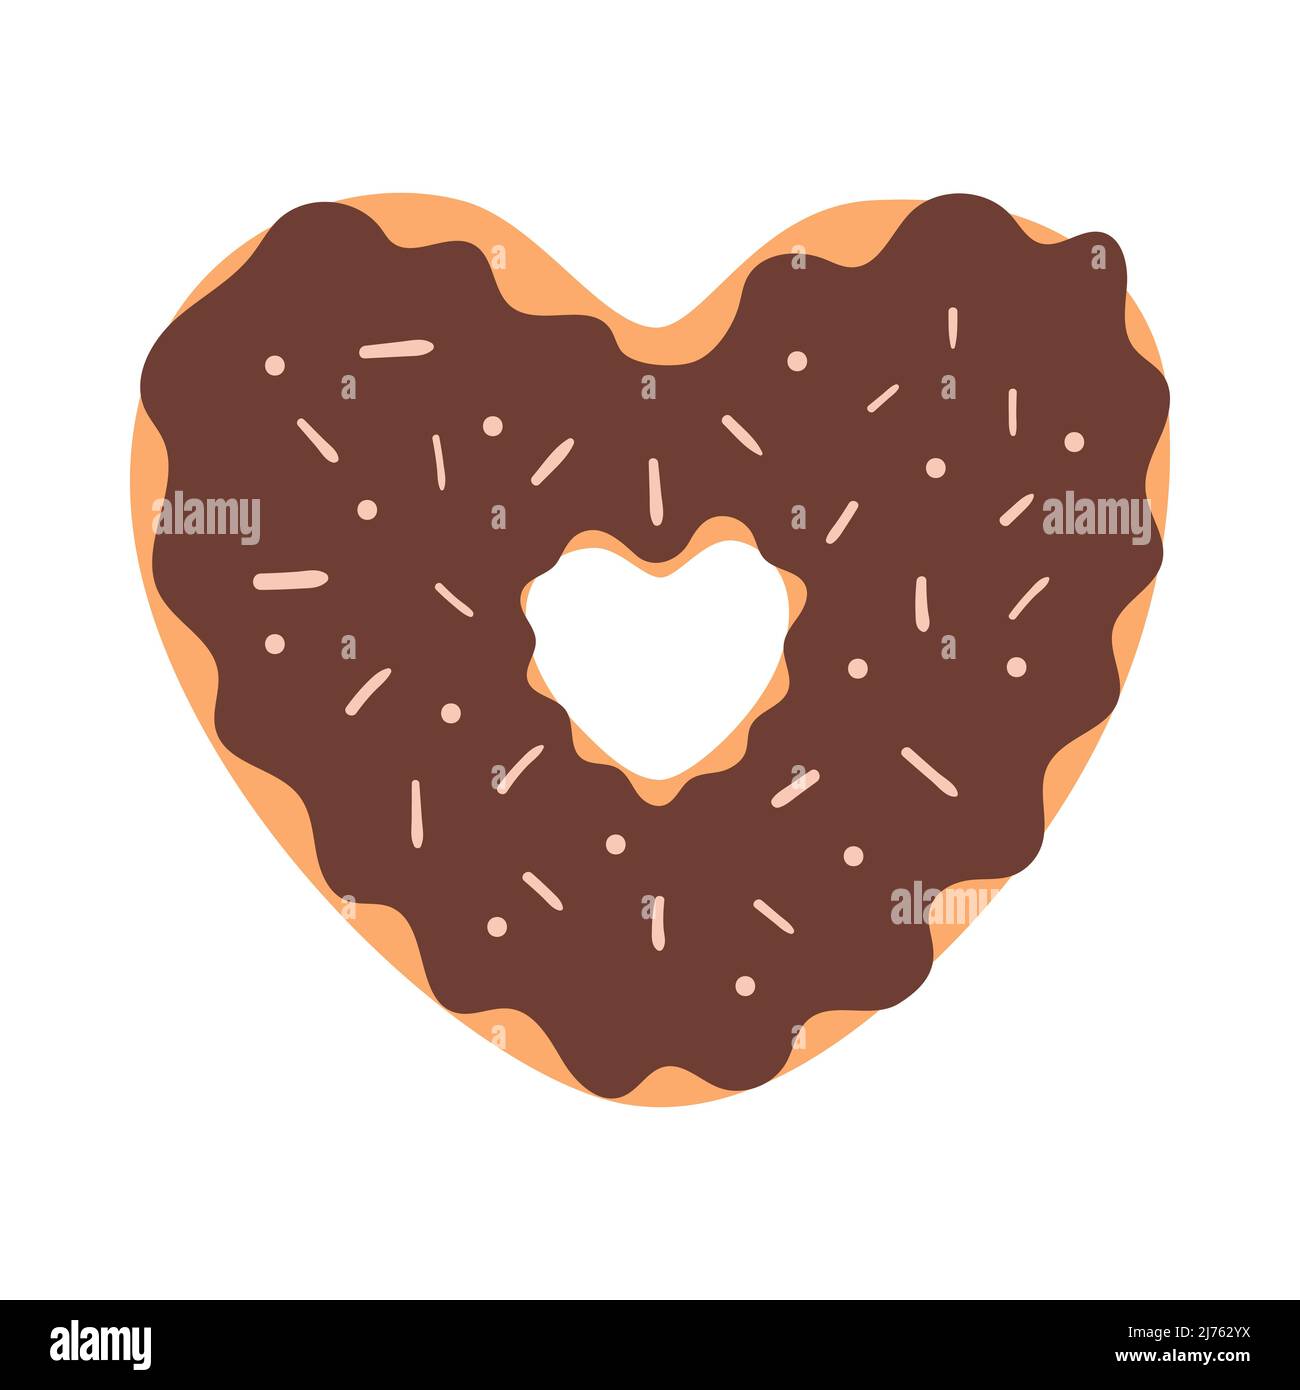 Un donut en forma de corazón con glaseado de chocolate y espolvoreado. Comida dulce, pasteles. Elemento decorativo para tarjetas de San Valentín. Simple vect de color plano Ilustración del Vector